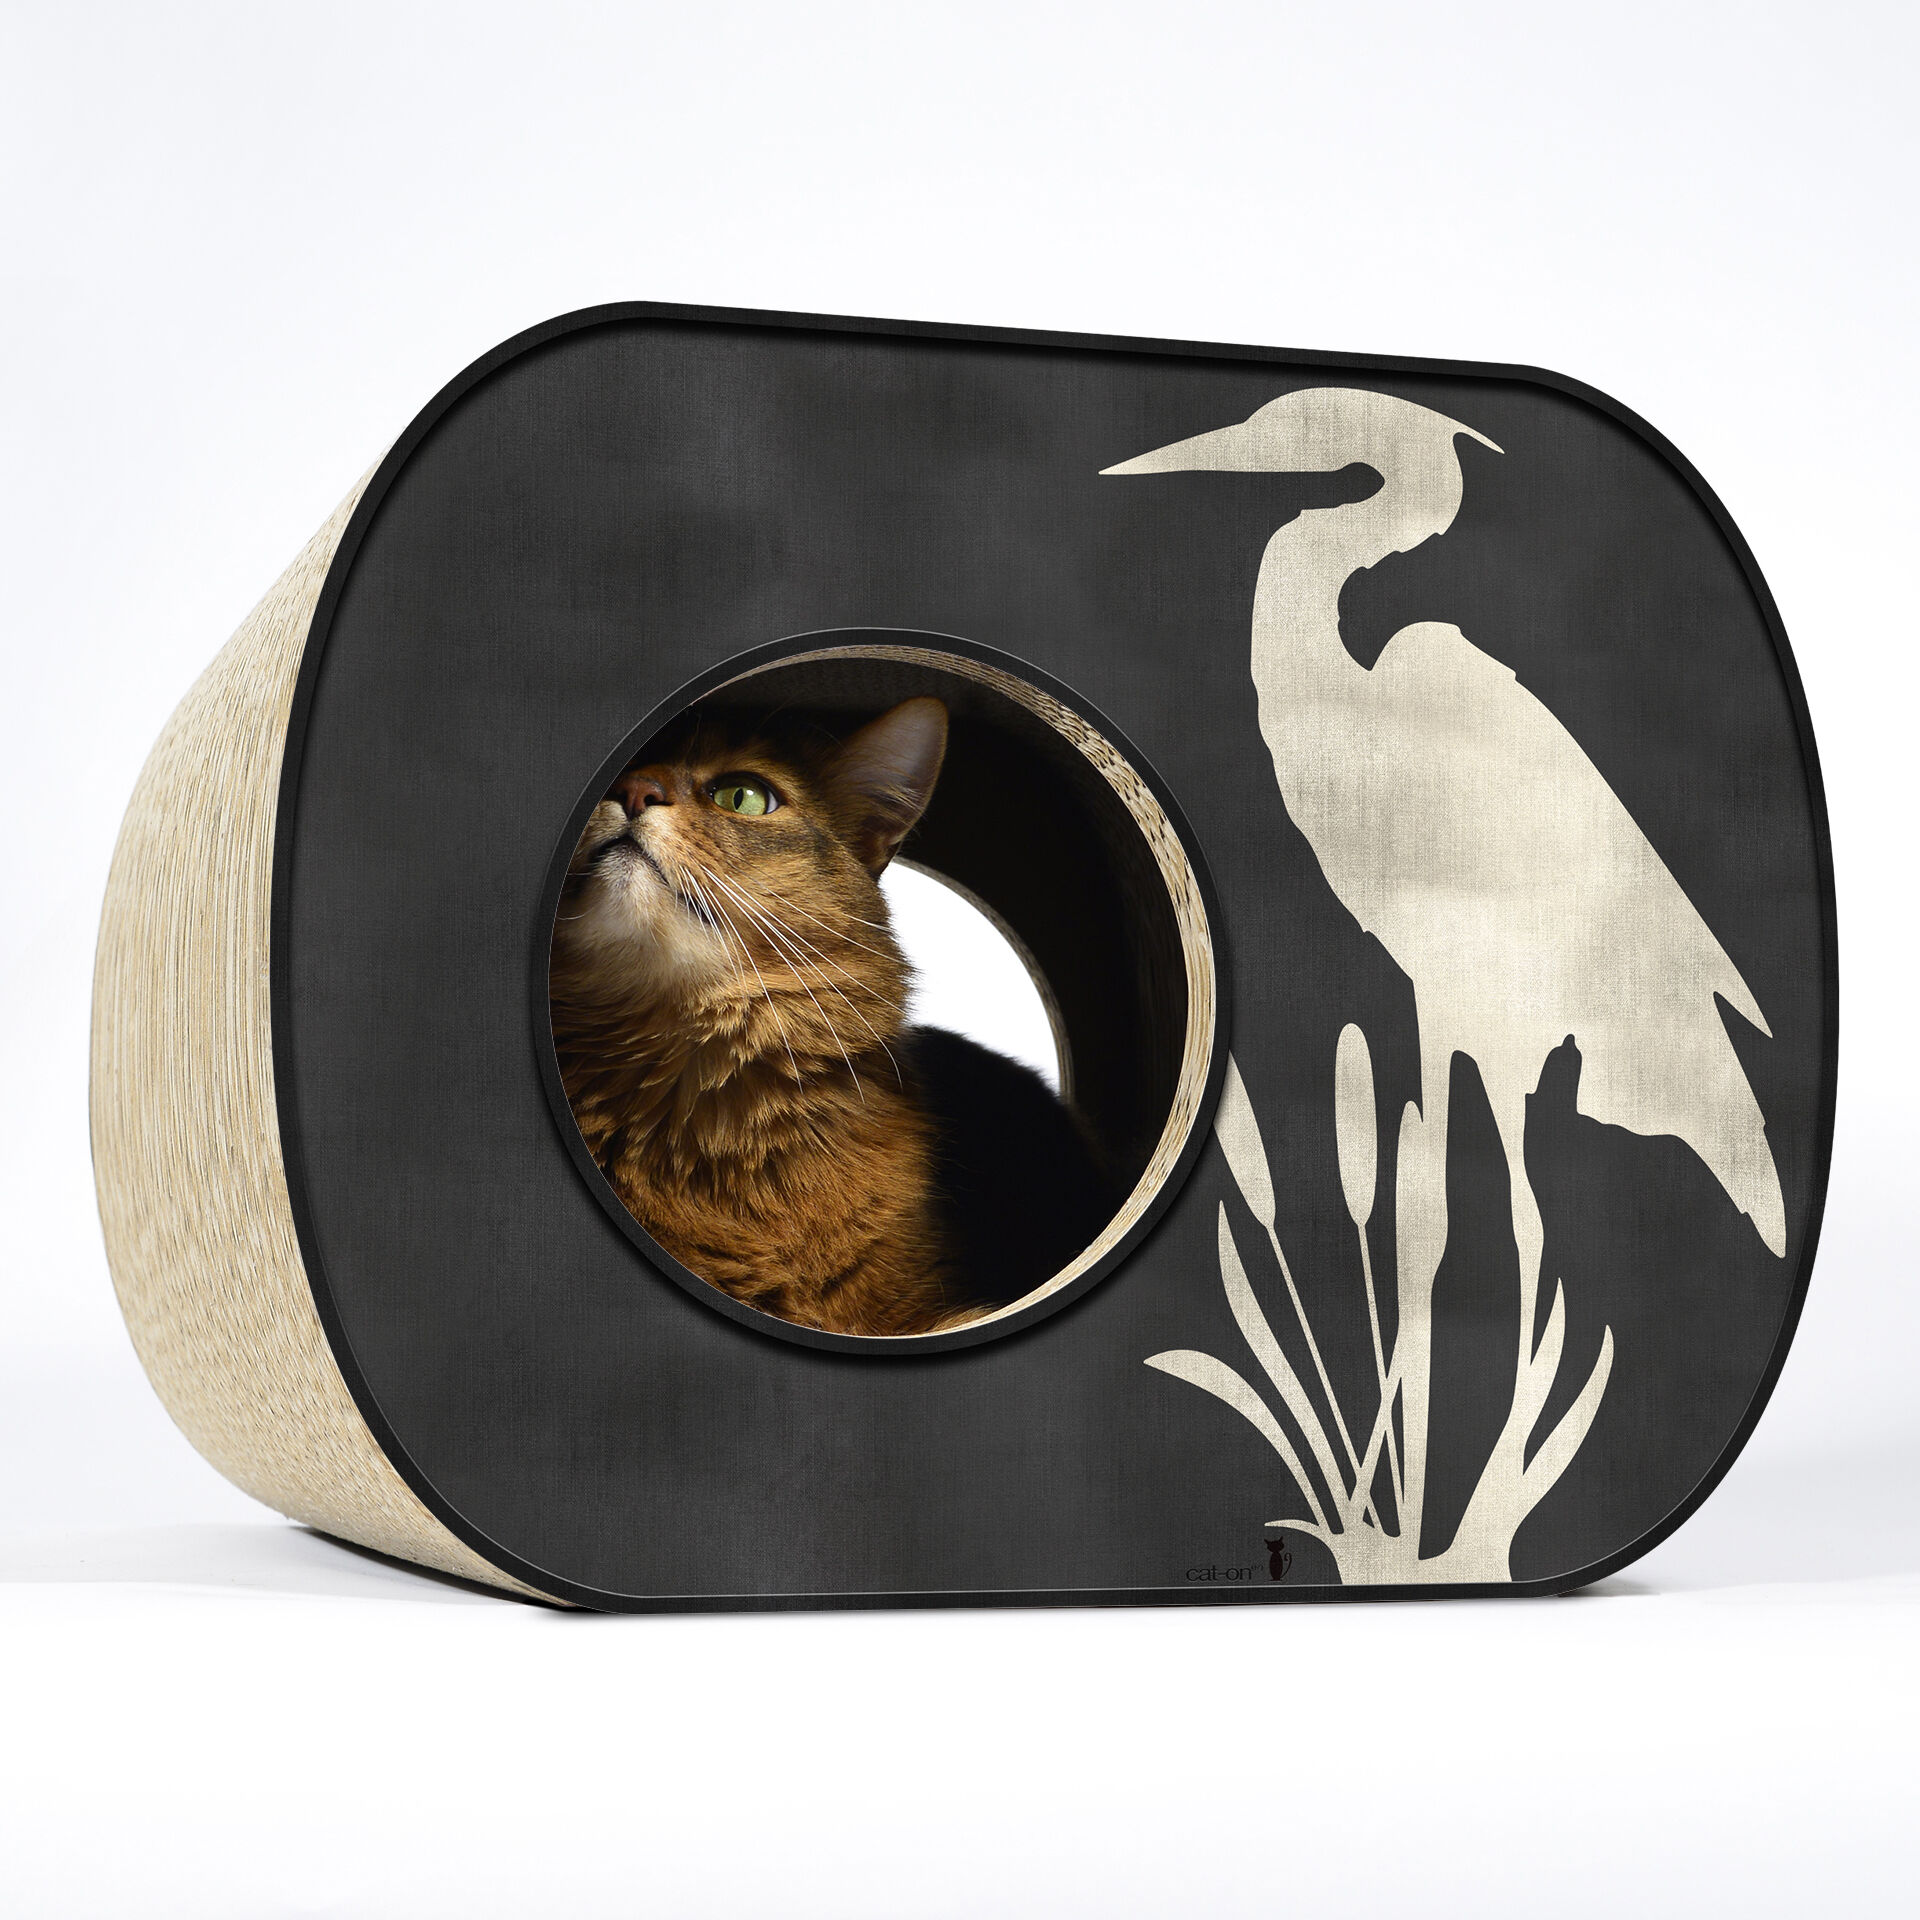 cat-on Kratzmöbel & Katzenmöbel aus Wellpappe - Design Kratzmoebel Brochhaus Kratzwuerfel Mit Katze 012